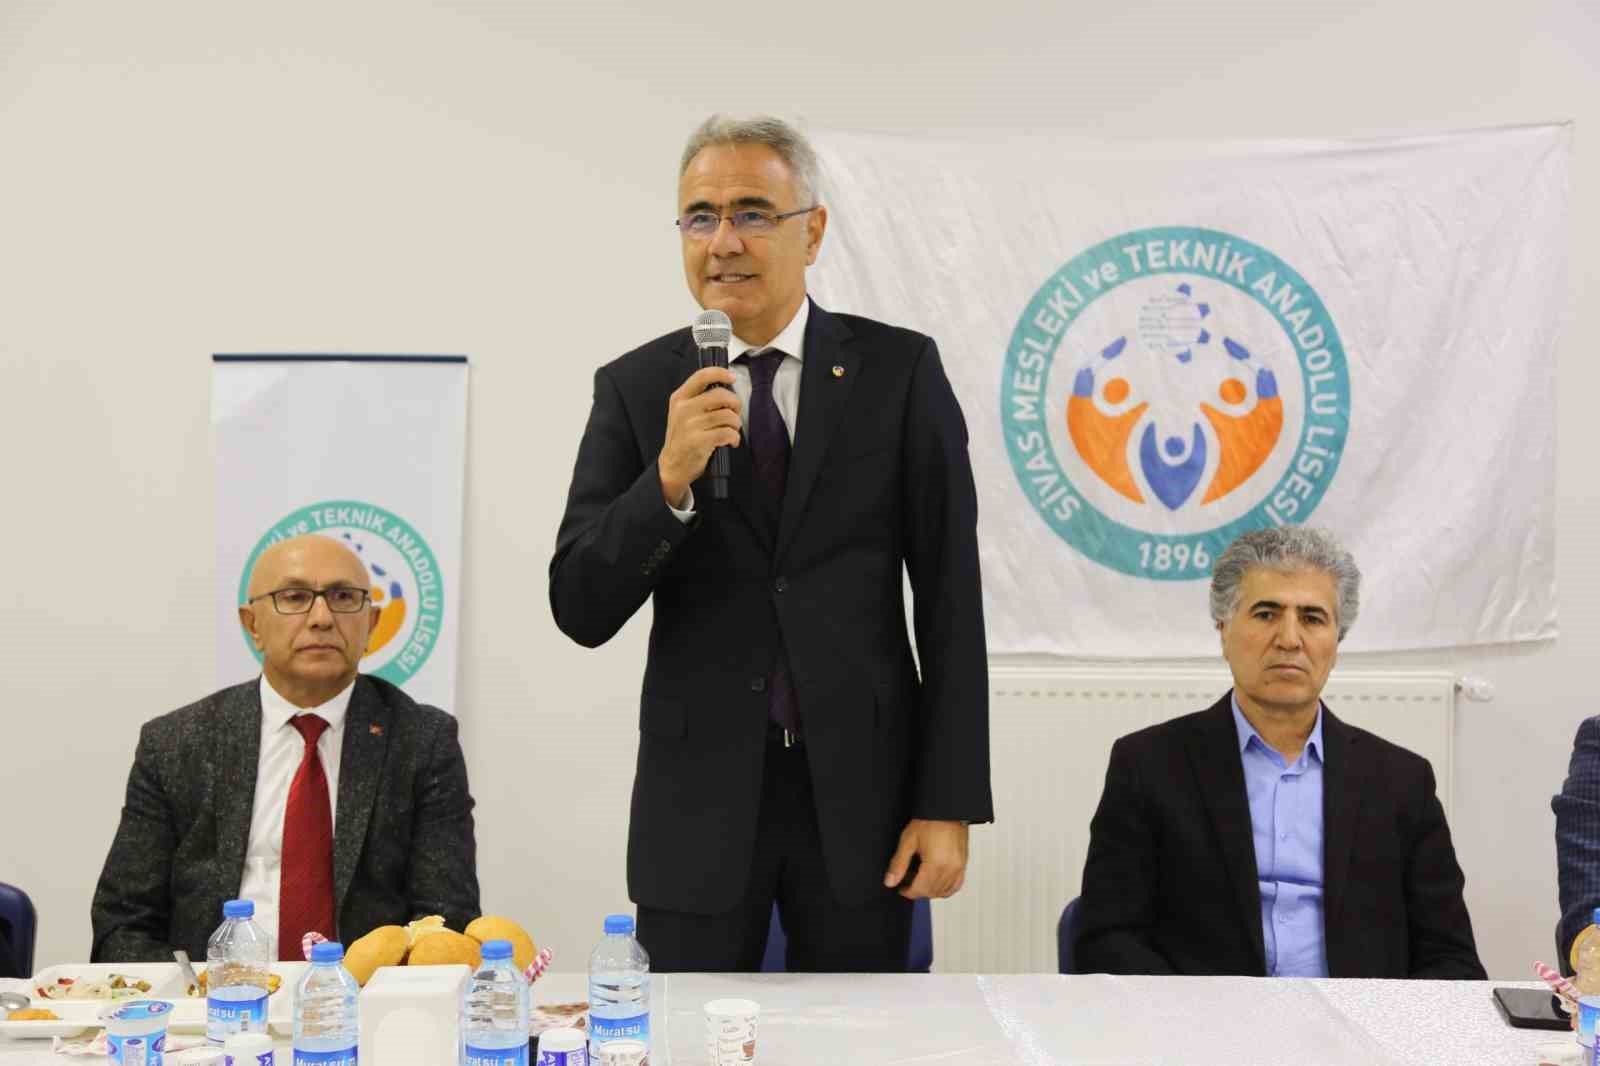 STSO Başkanı Özdemir: “Meslek liselerini ve mesleki eğitimi çok önemsiyoruz”